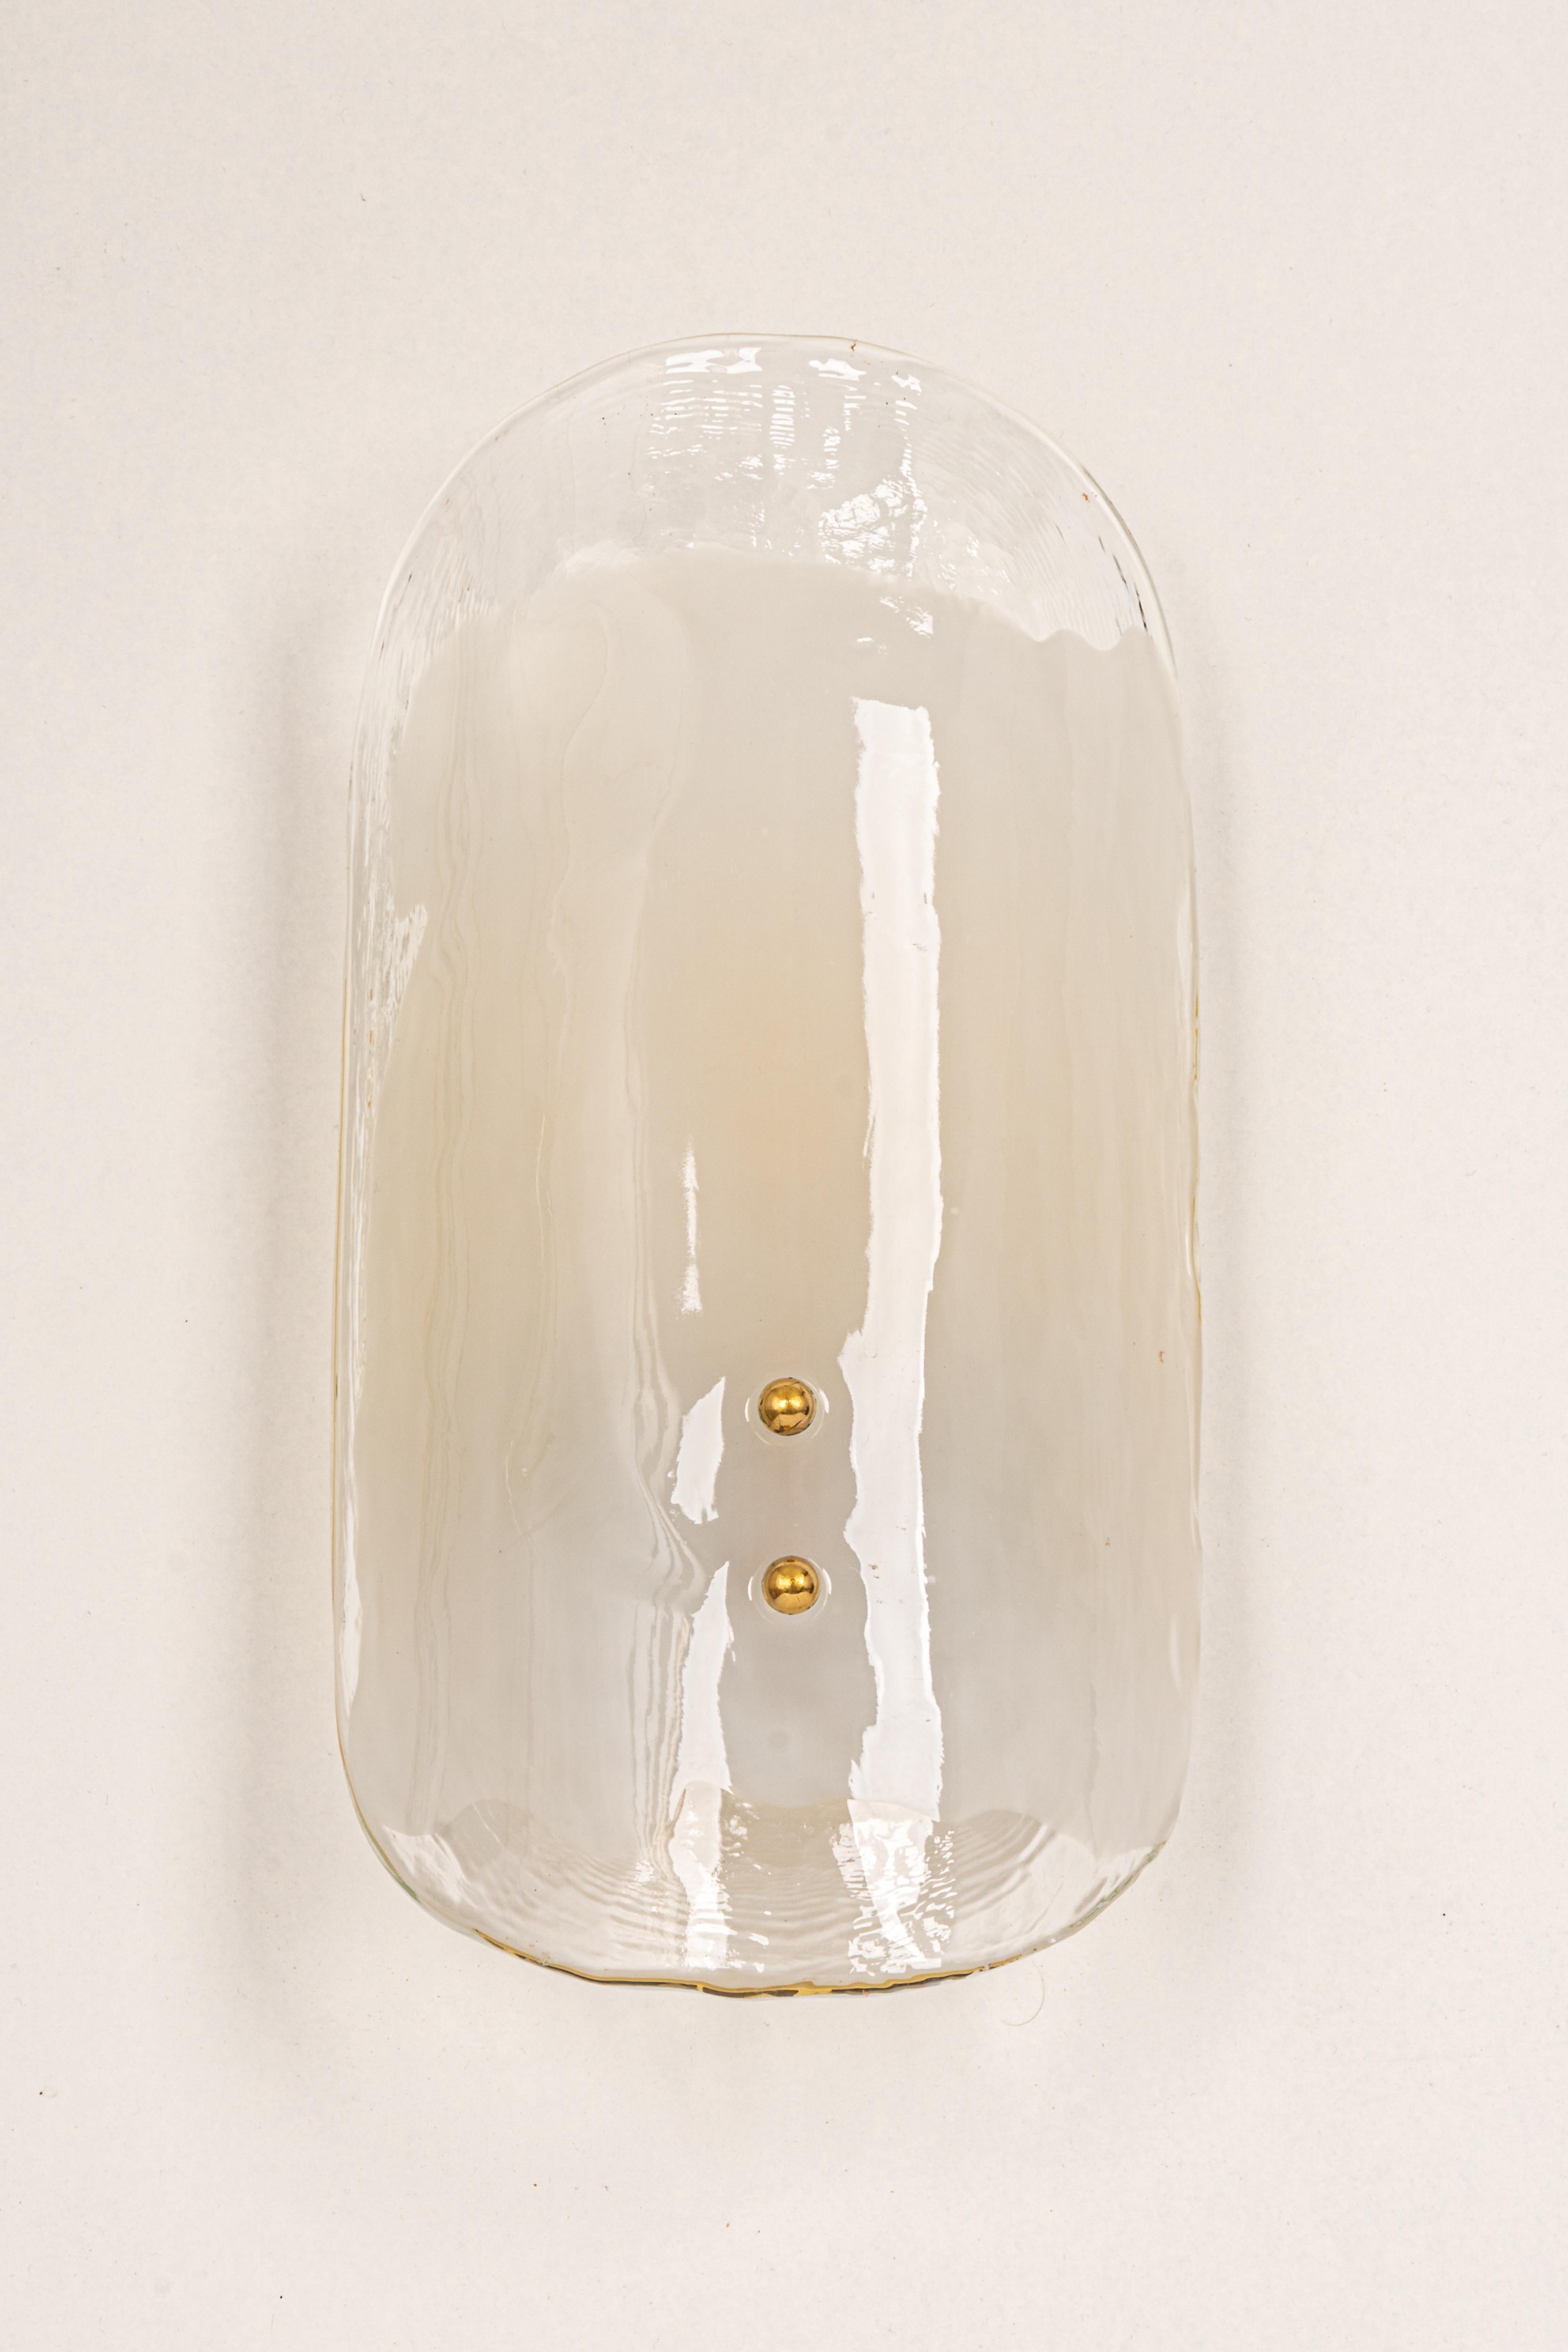 Wunderschöner Wandleuchter aus der Mitte des Jahrhunderts mit Muranoglas, hergestellt von Kalmar, Österreich, ca. 1960-1969.
Hochwertig und in sehr gutem Zustand. Gereinigt, gut verkabelt und einsatzbereit.  

Die Leuchte benötigt 2 x E14